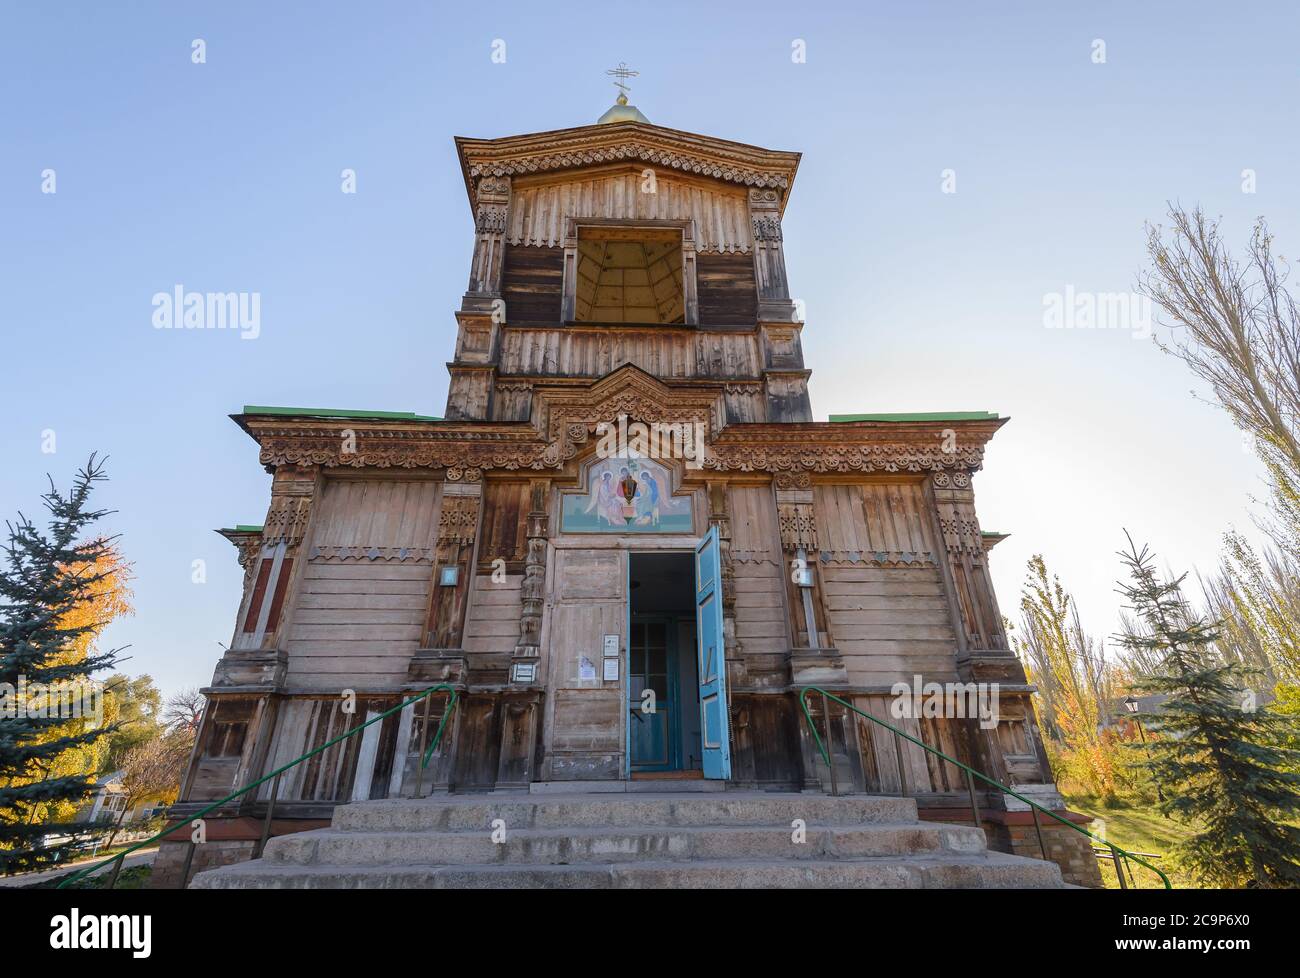 Haupteingang der Heiligen Dreifaltigkeit orthodoxen Kirche in Karakol, Kirgisistan. Holzkathedrale mit Fassade, die mit Schnitzereien verziert ist. Stockfoto